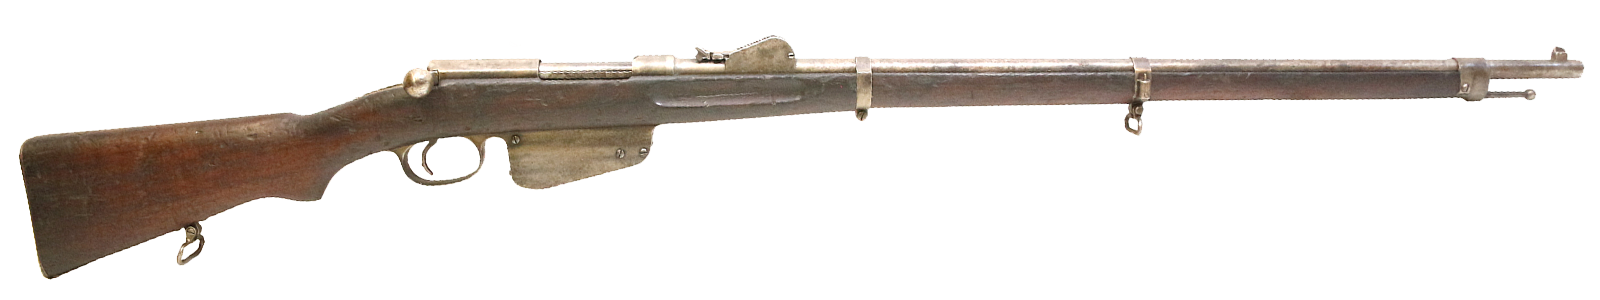 Steyr Mannlicher Model 1886 Service Rifle 11x58mm